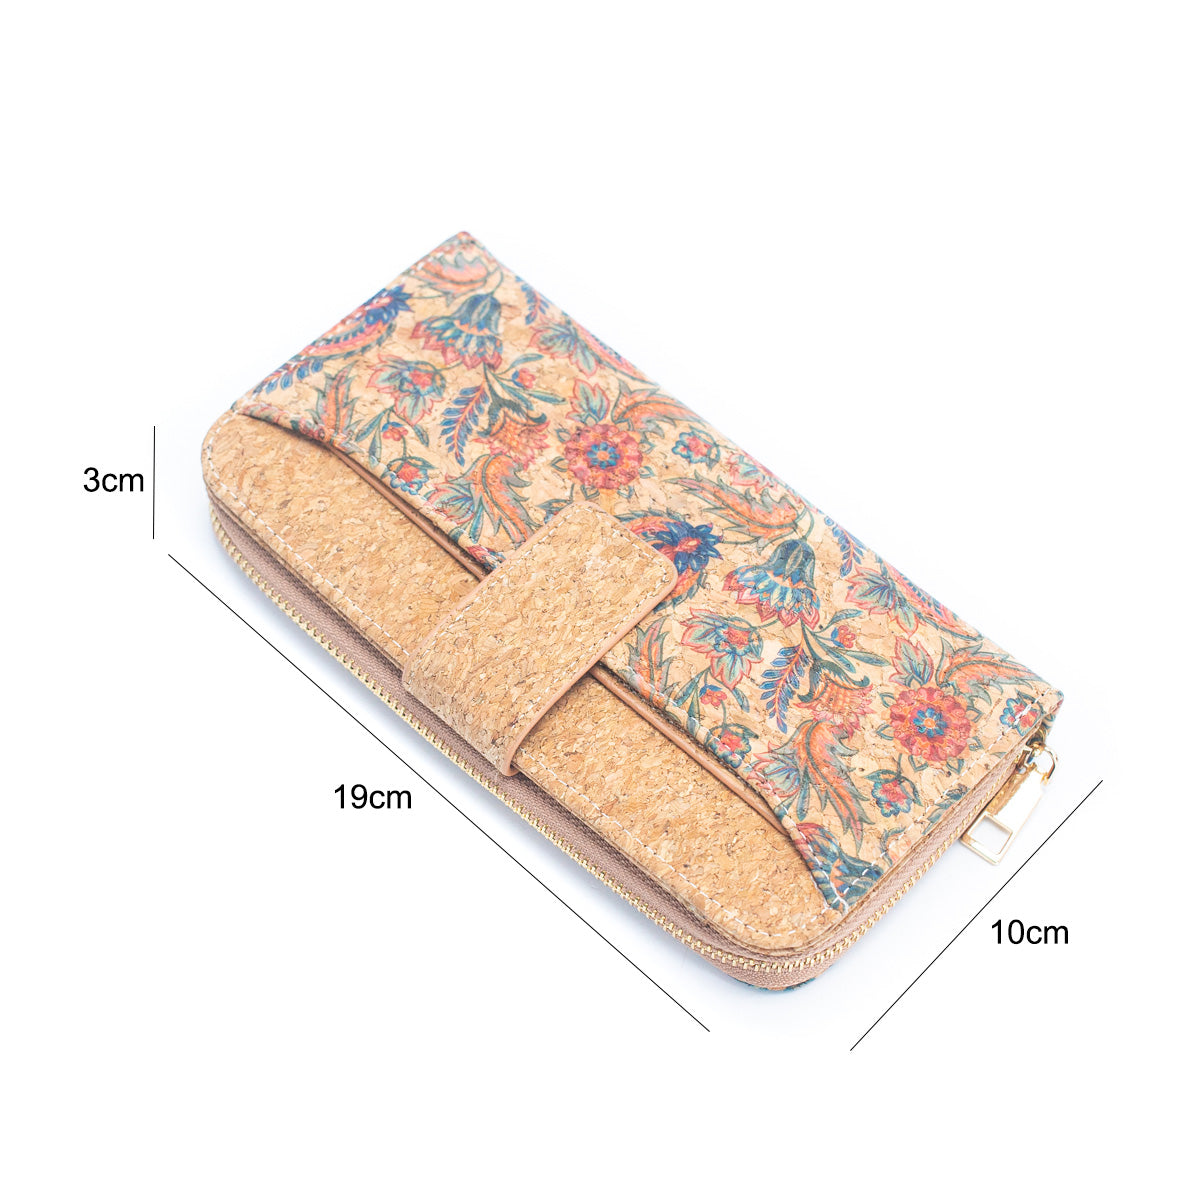 6 portefeuilles en liège naturel avec motifs floraux et mosaïques (paquet de 6 unités) HY-026-MIX-6